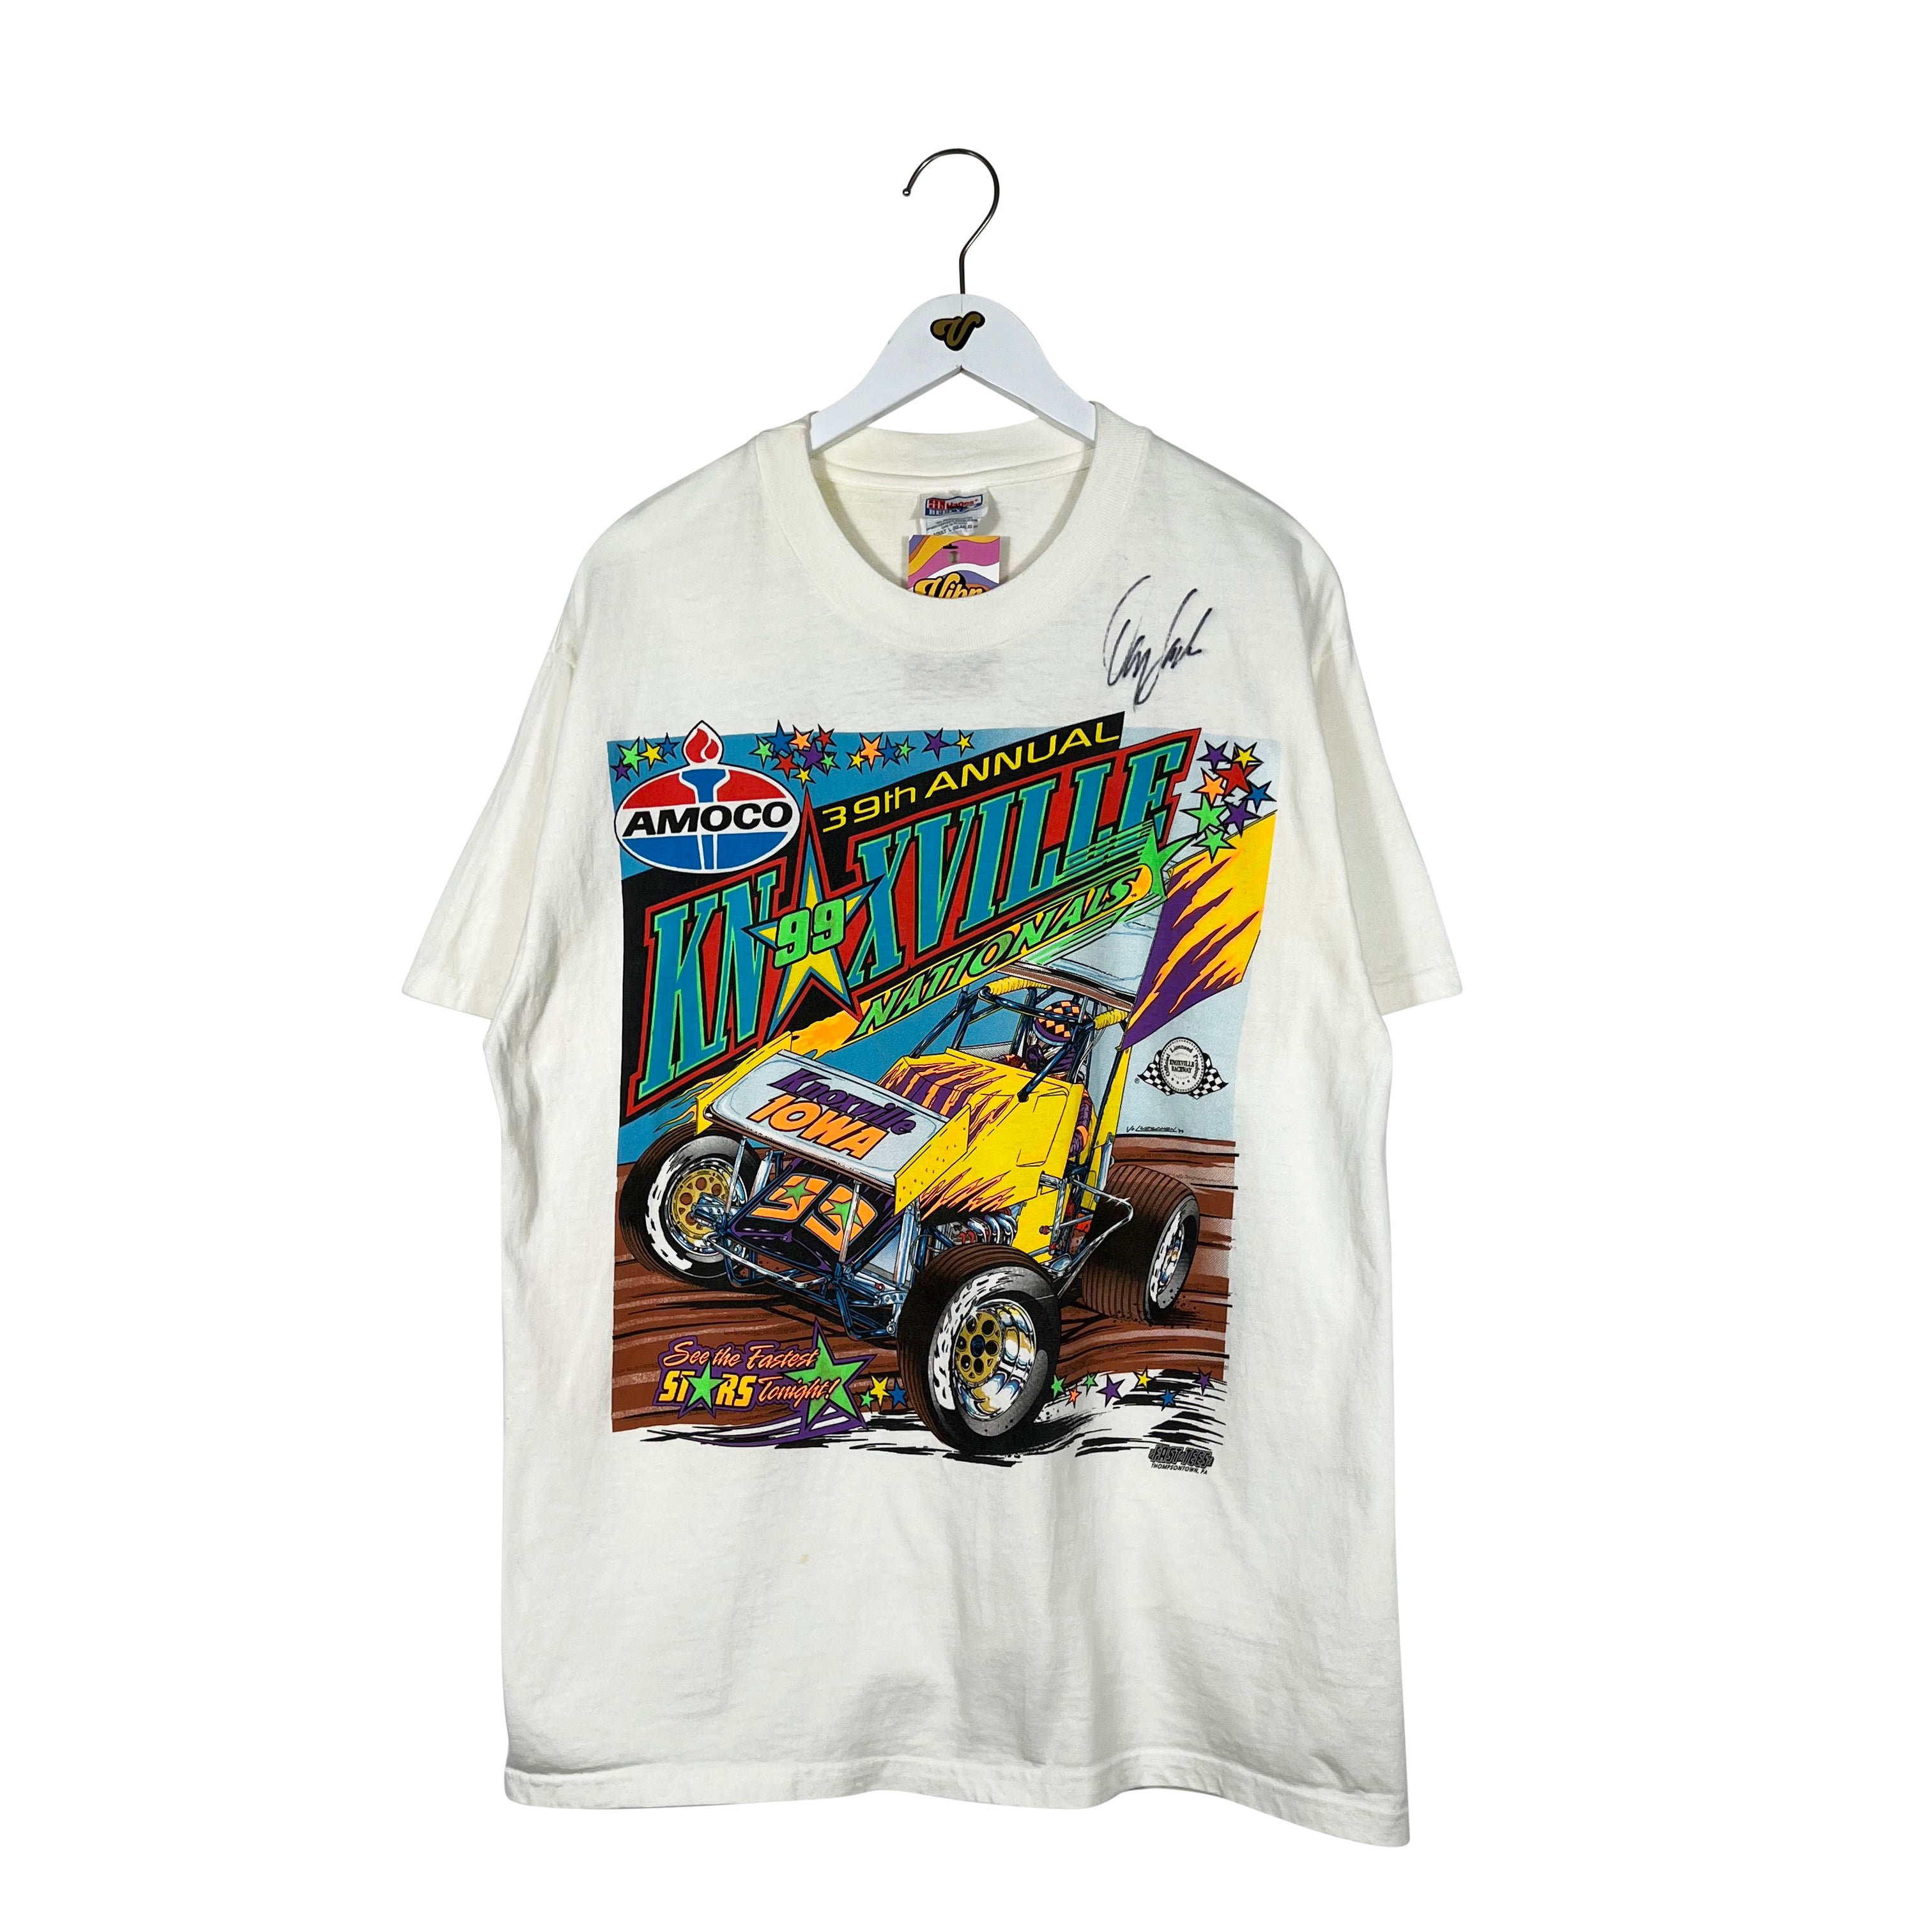 Vintage 2000 Knoxville Nationals T-Shirt - Men's Large